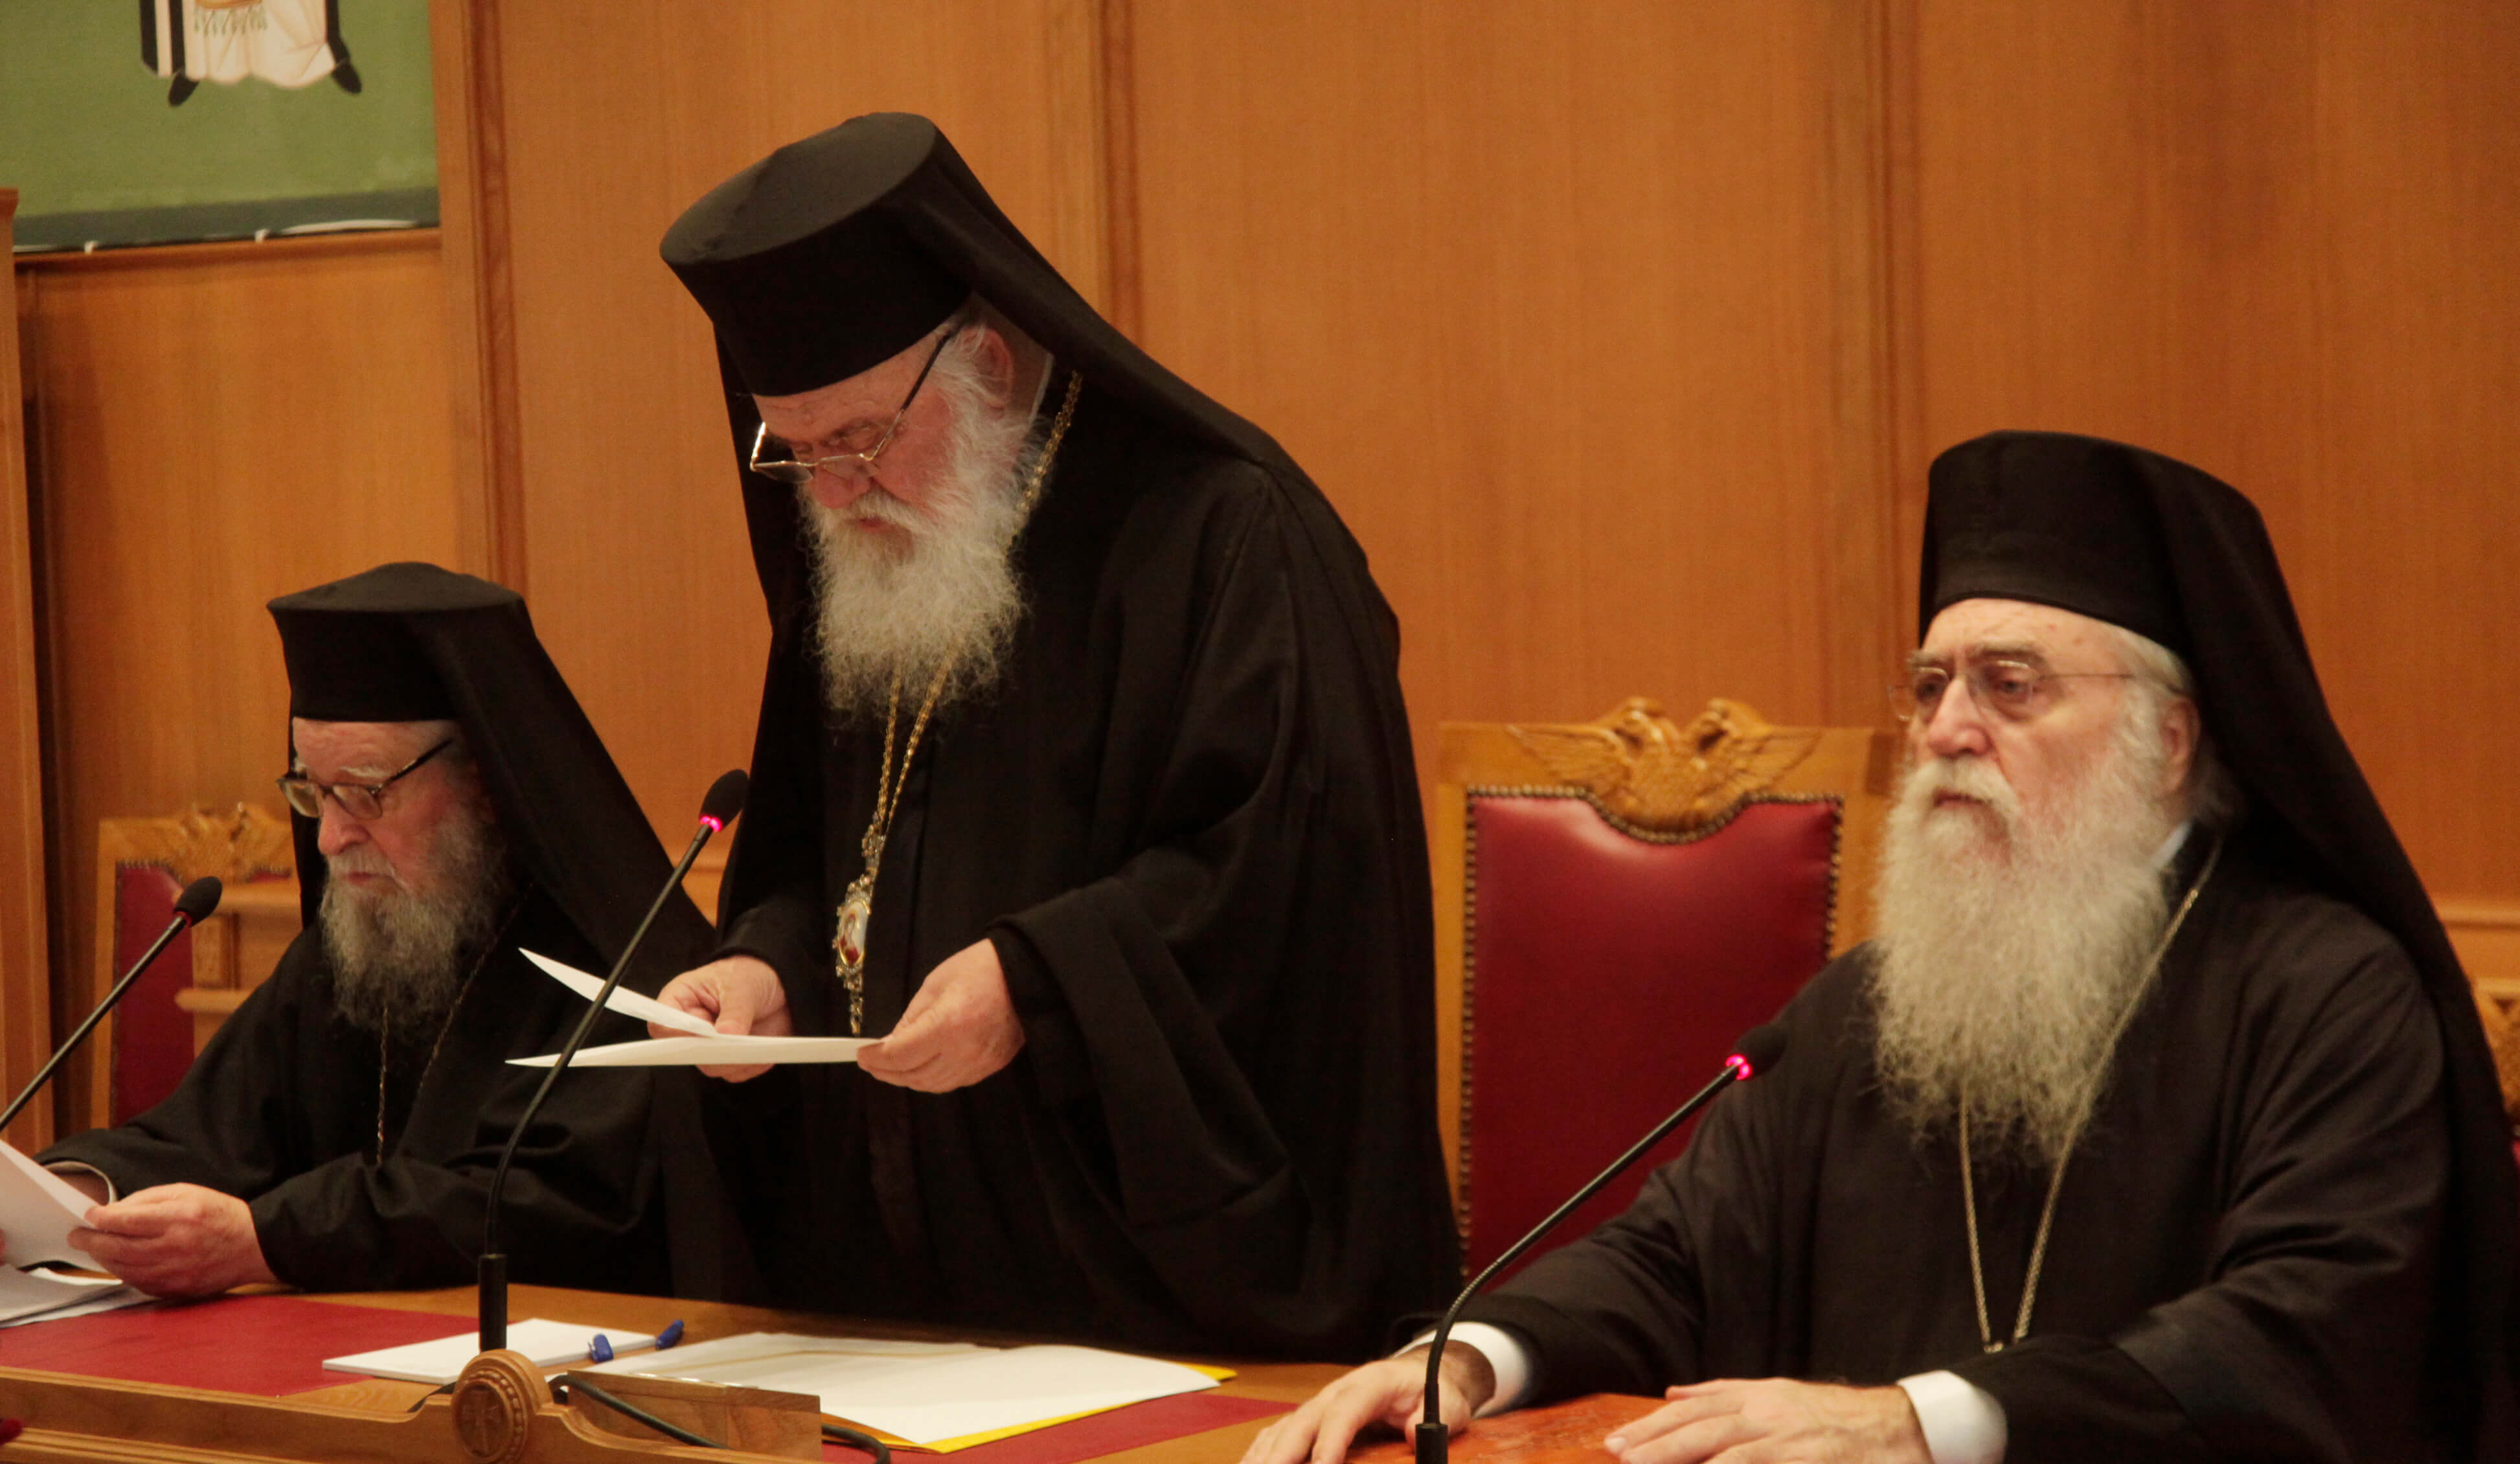 εικόνα άρθρου: Προσφώνηση του Αρχιεπισκόπου στην τακτική σύγκληση της Ιεράς Συνόδου της Ιεραρχίας της Εκκλησίας της Ελλάδος